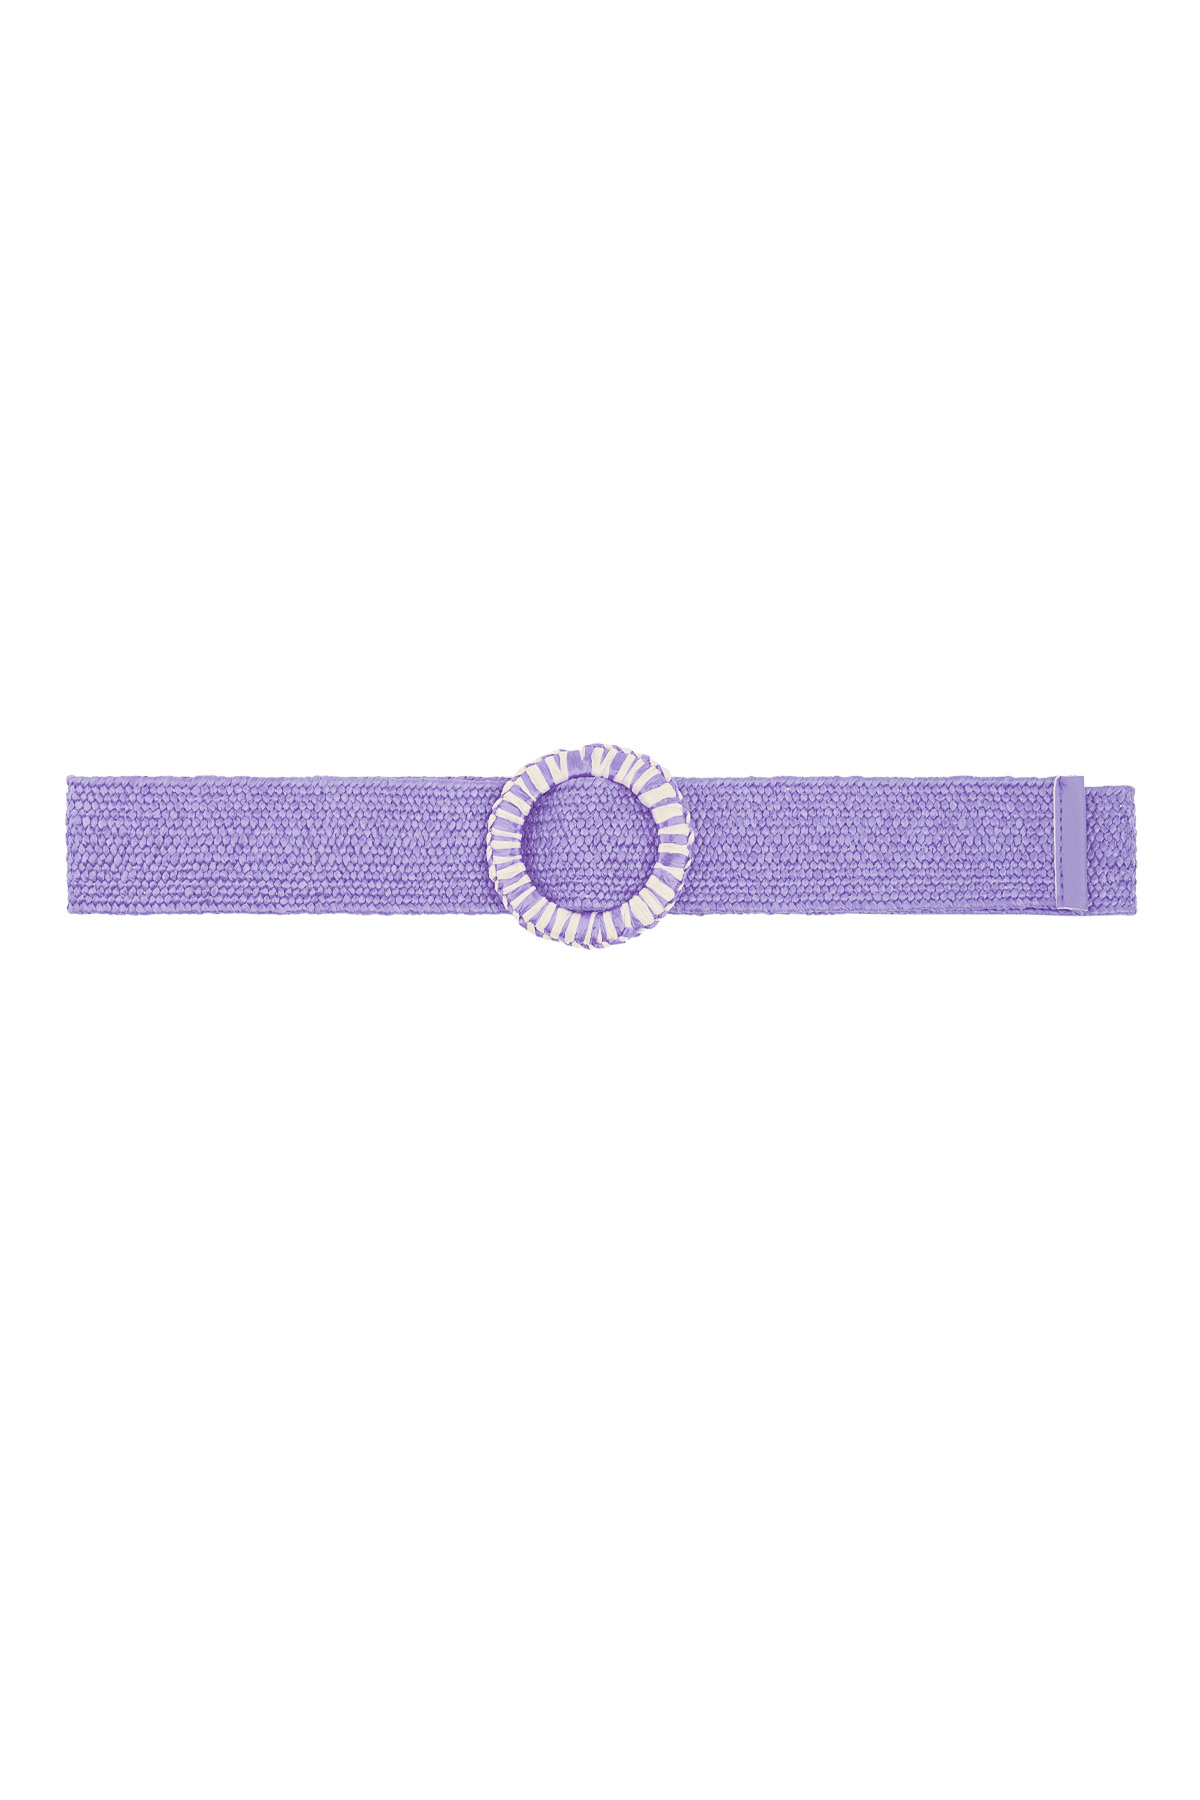 Cinturón colorido con estampado - violeta h5 